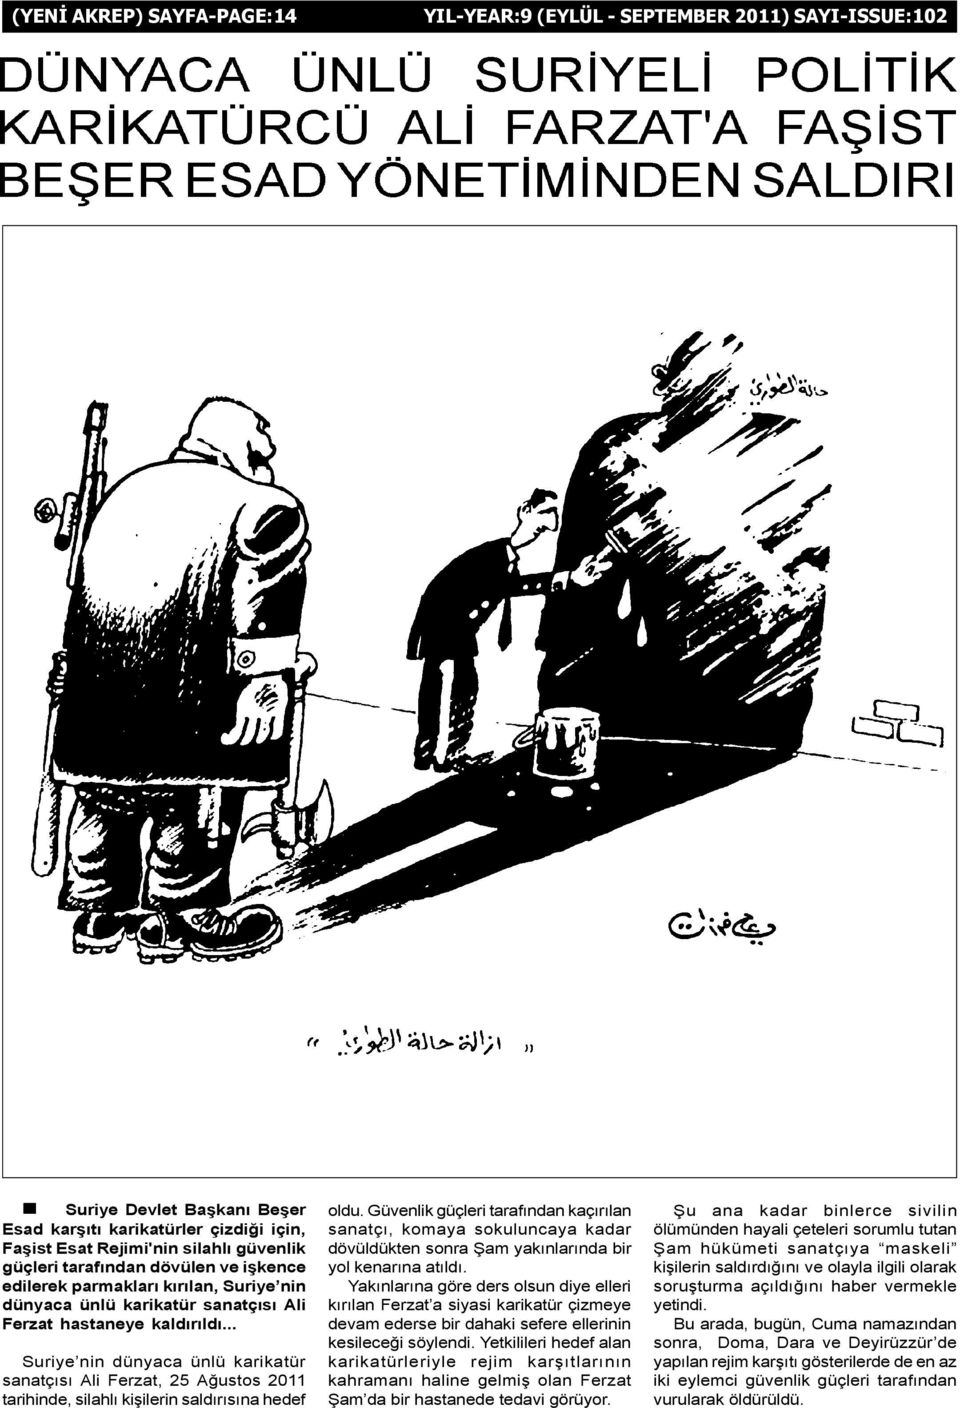 .. Suriye nin dünyaca ünlü karikatür sanatçýsý Ali Ferzat, 25 Aðustos 2011 tarihinde, silahlý kiþilerin saldýrýsýna hedef oldu.